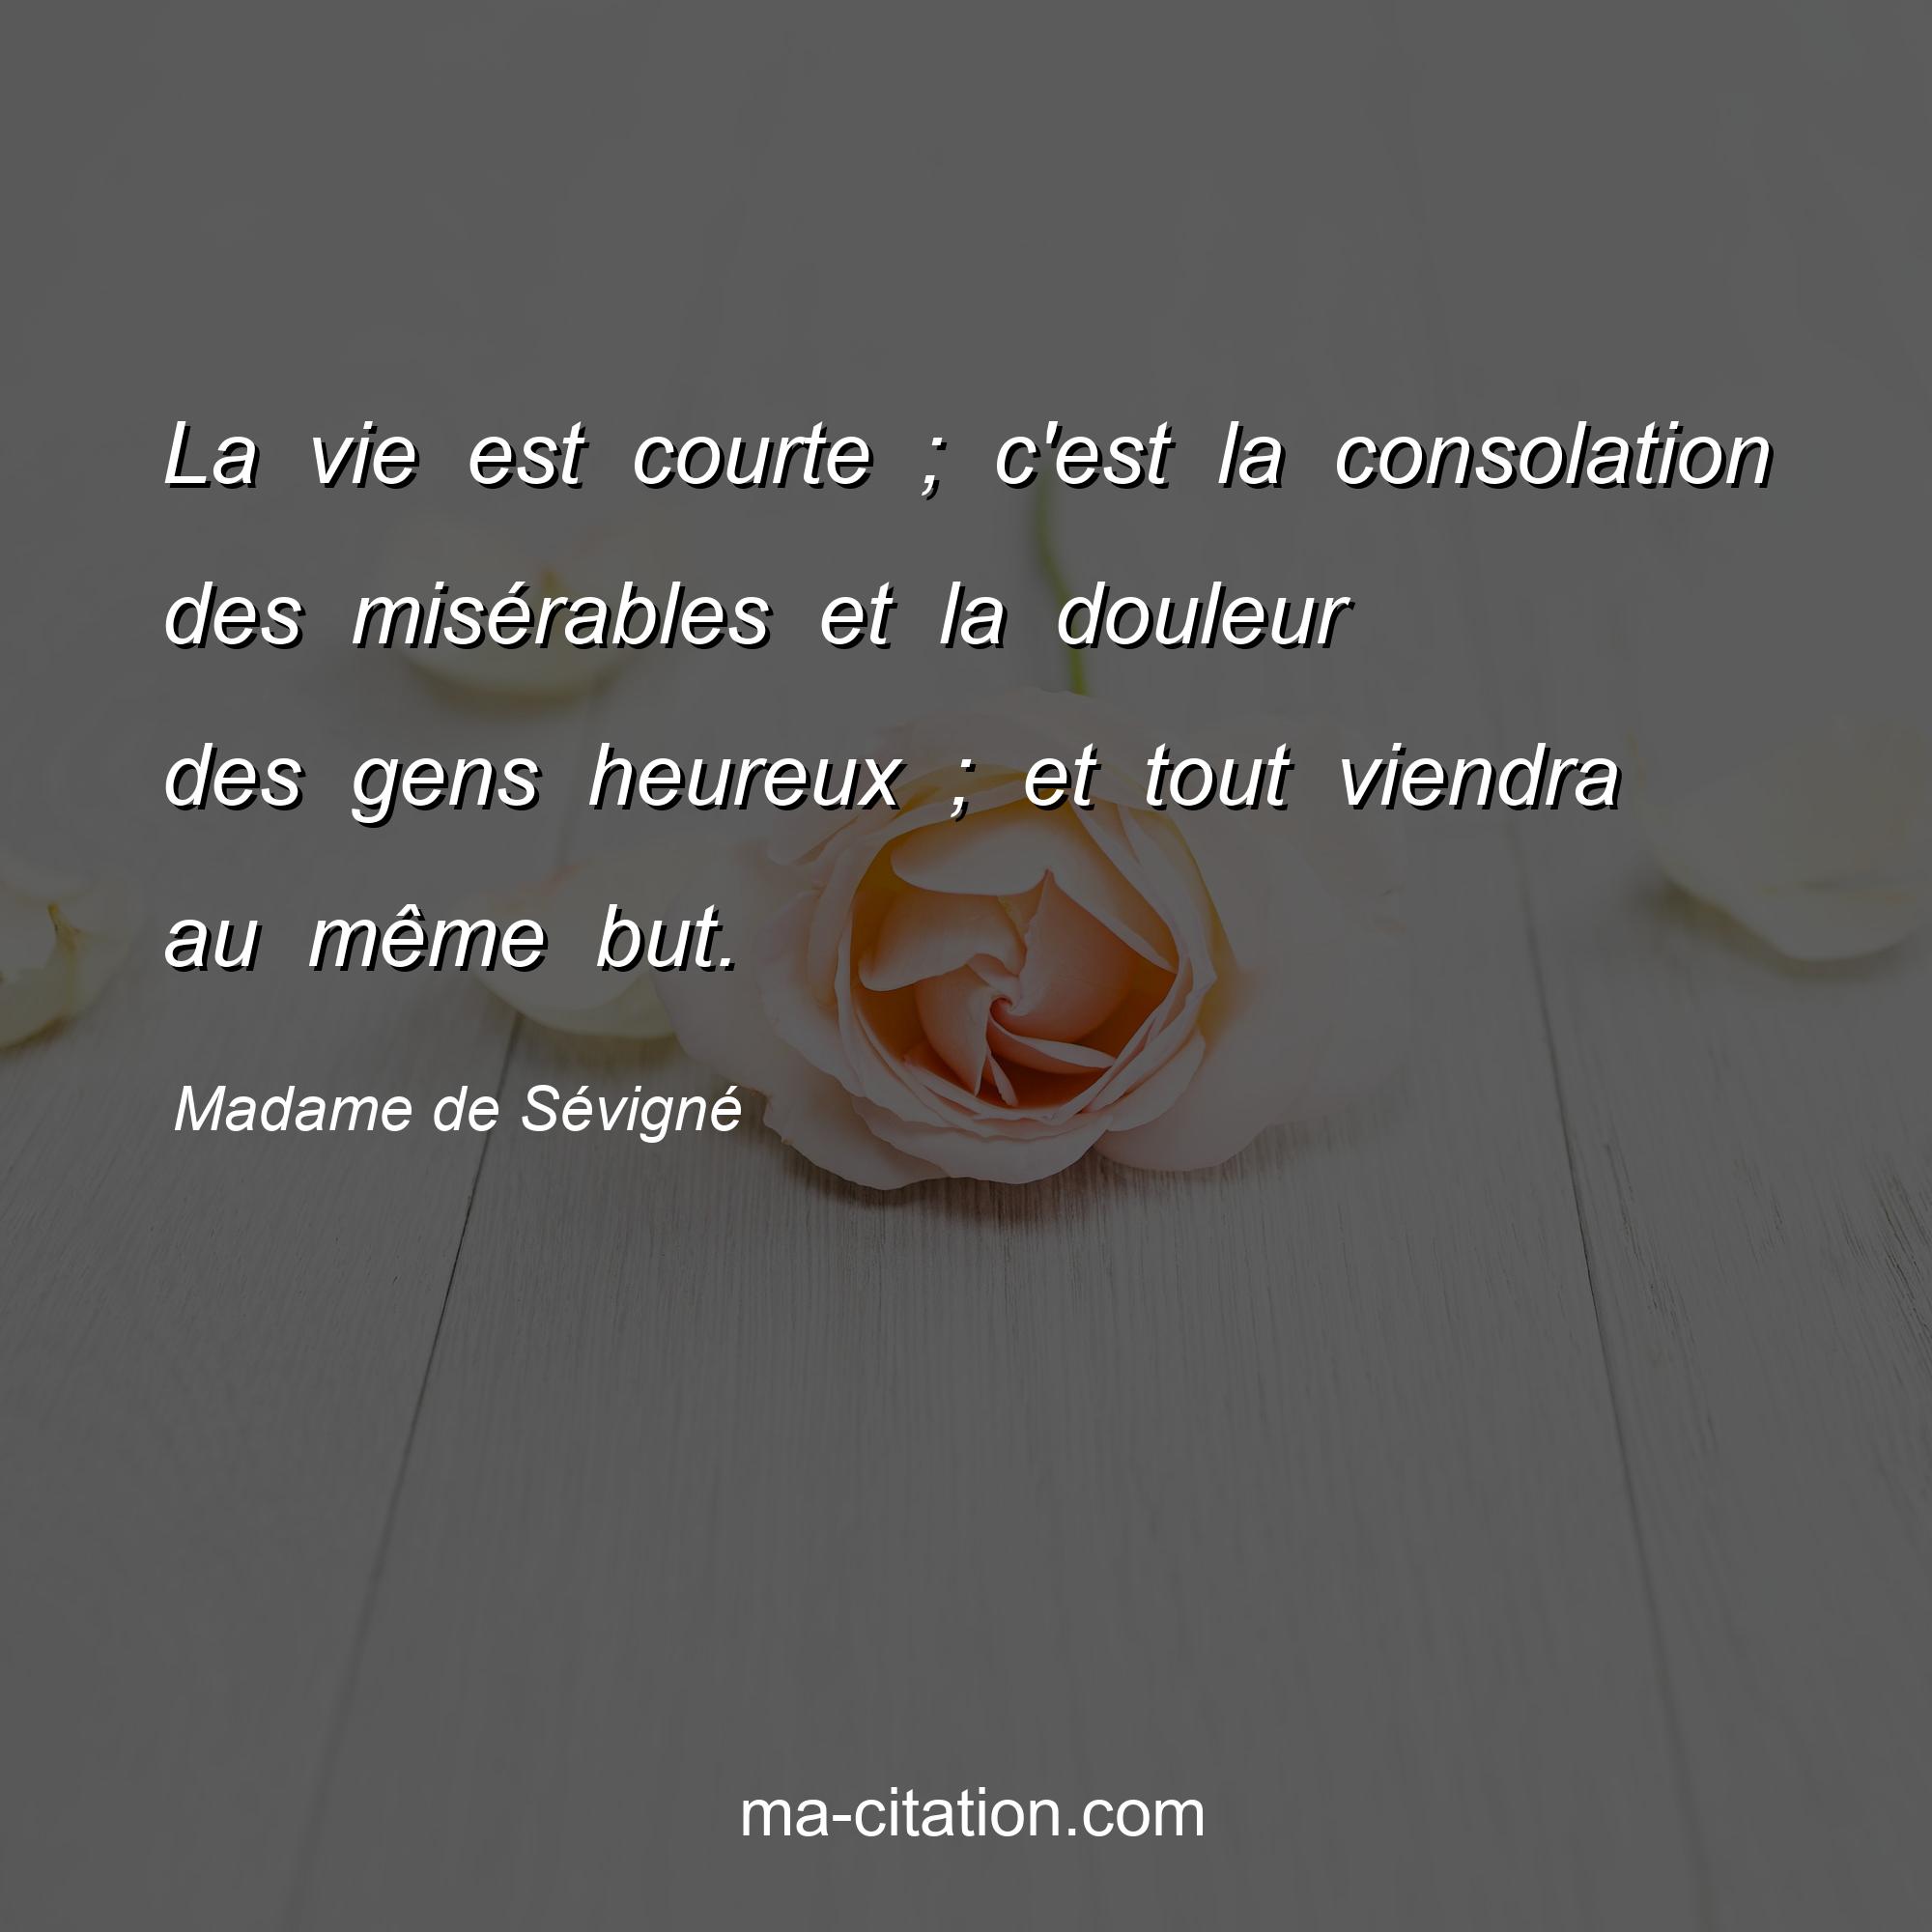 Madame de Sévigné : La vie est courte ; c'est la consolation des misérables et la douleur des gens heureux ; et tout viendra au même but.